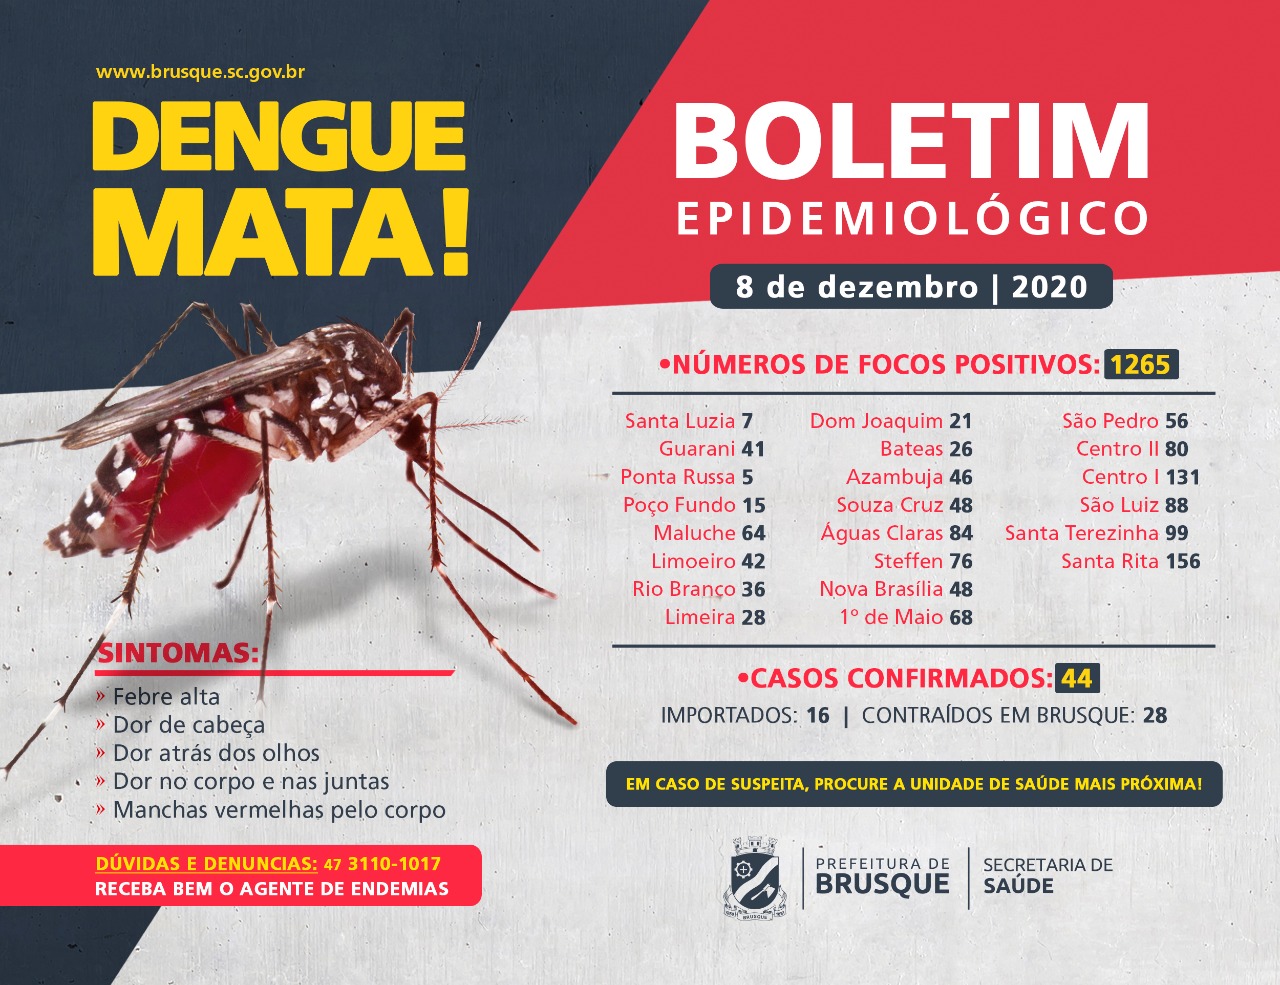 Confira o boletim epidemiológico da dengue desta terça-feira (08)